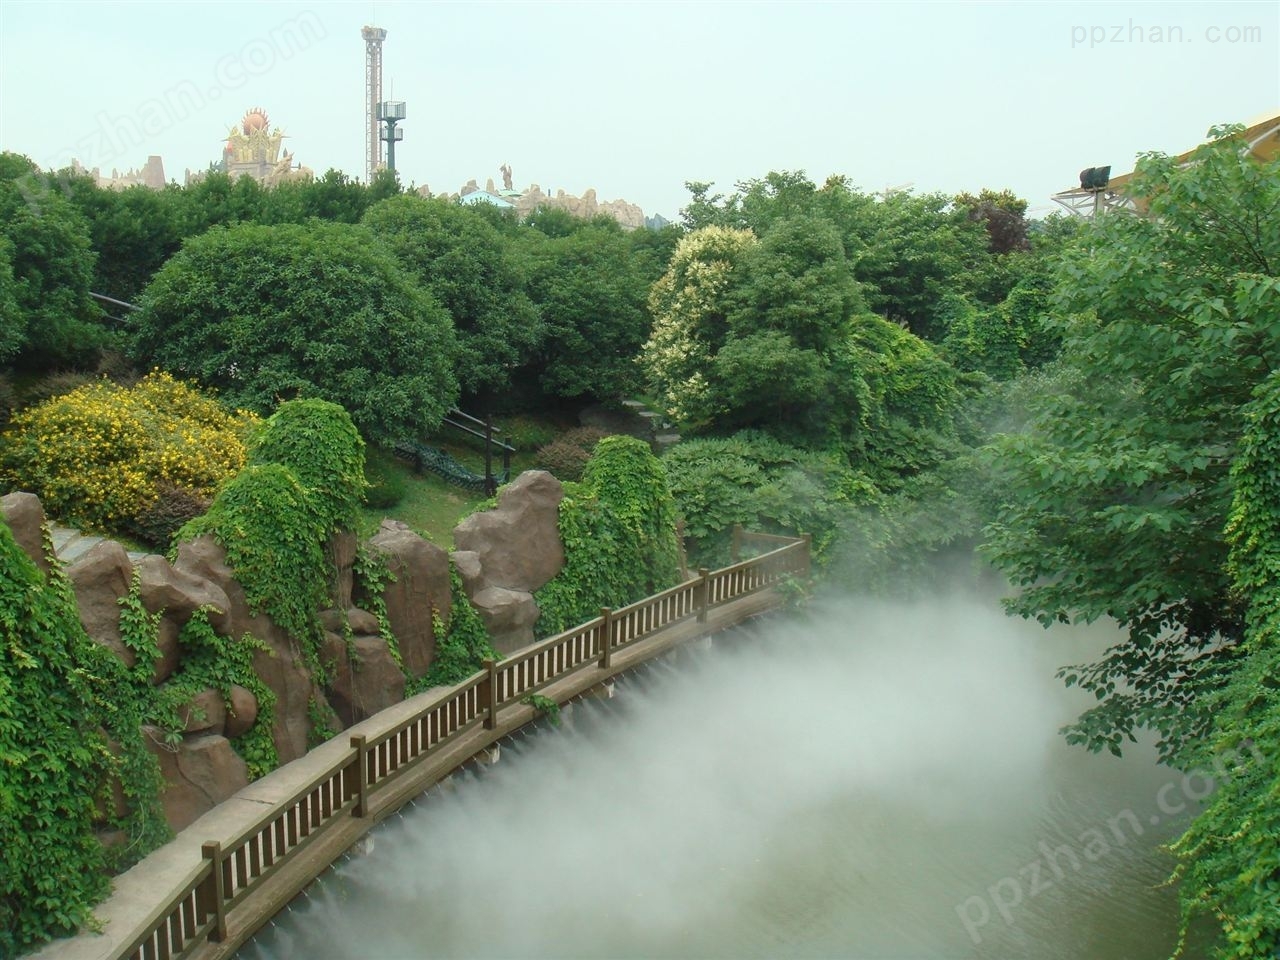 公园景观喷雾设备 人工造雾机的应用